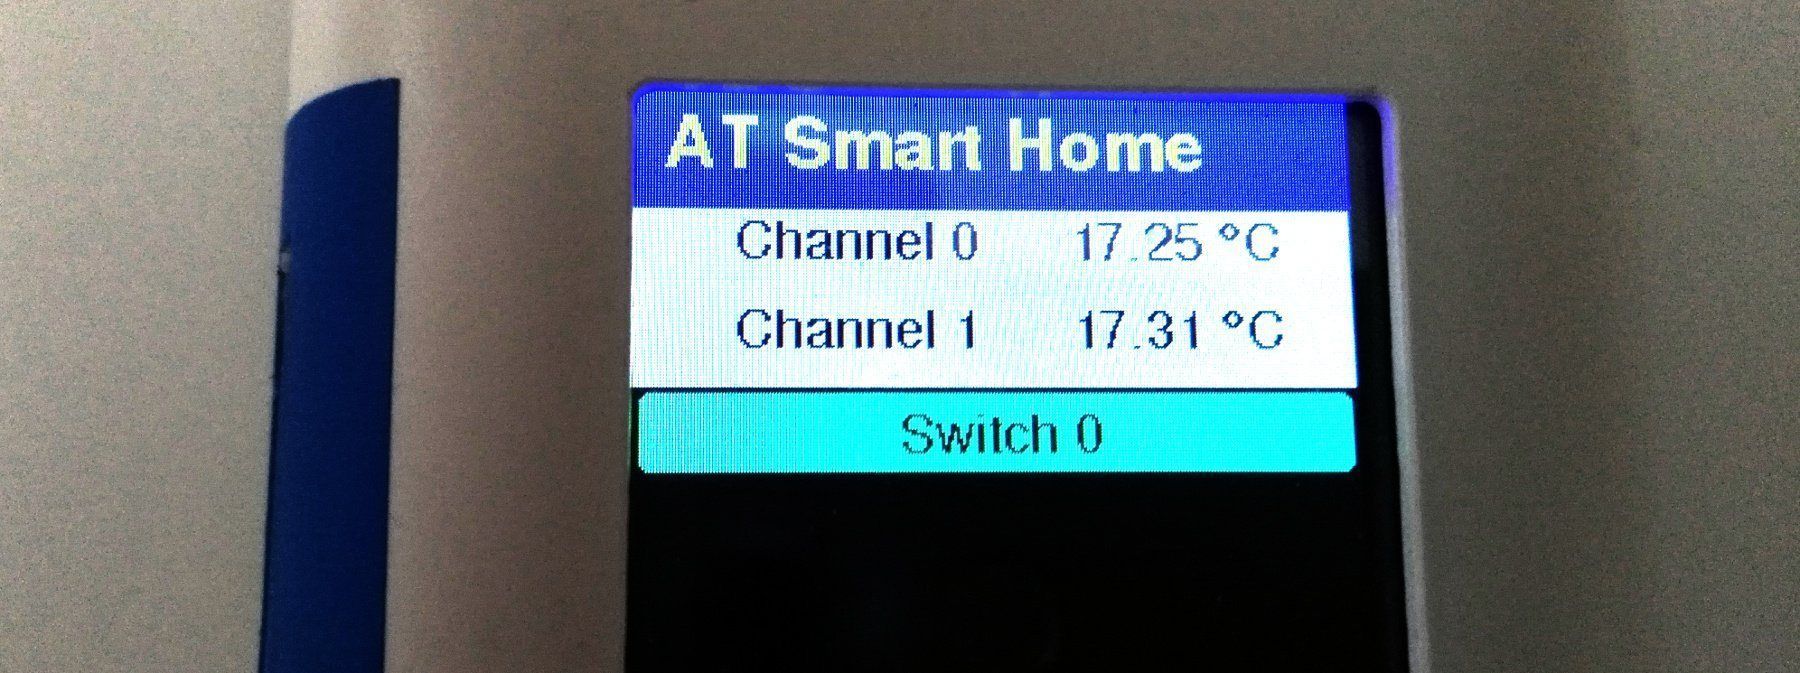 Smarthome Zentrale mit ArduiTouch Teil 3  - Aktor Device mit D1Mini und Relais - AZ-Delivery